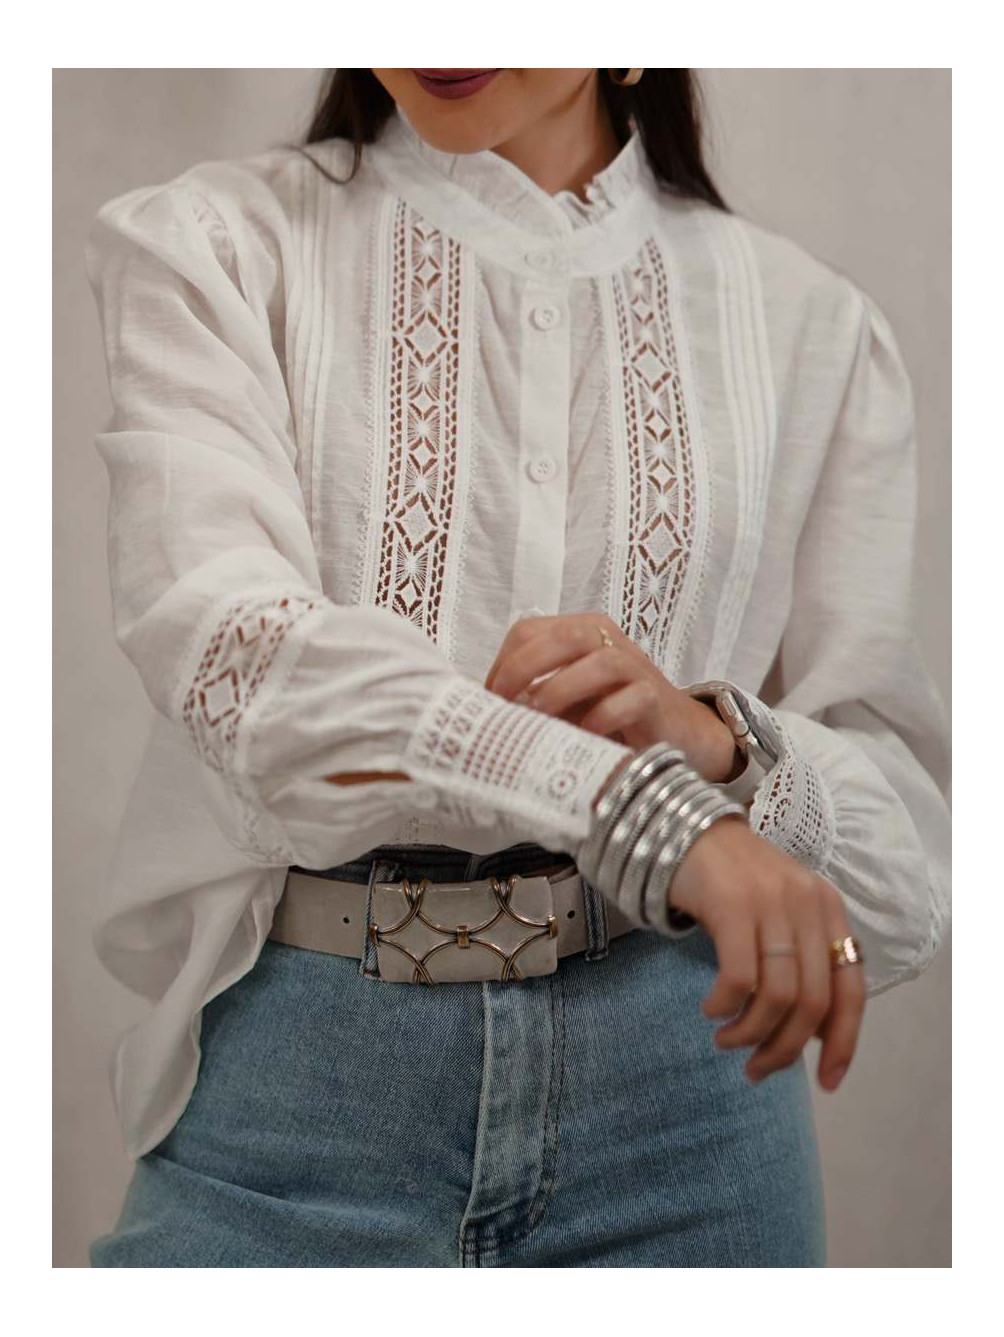 Camisa Puntilla Blanca, tendencias, Mariquita Trasquilá